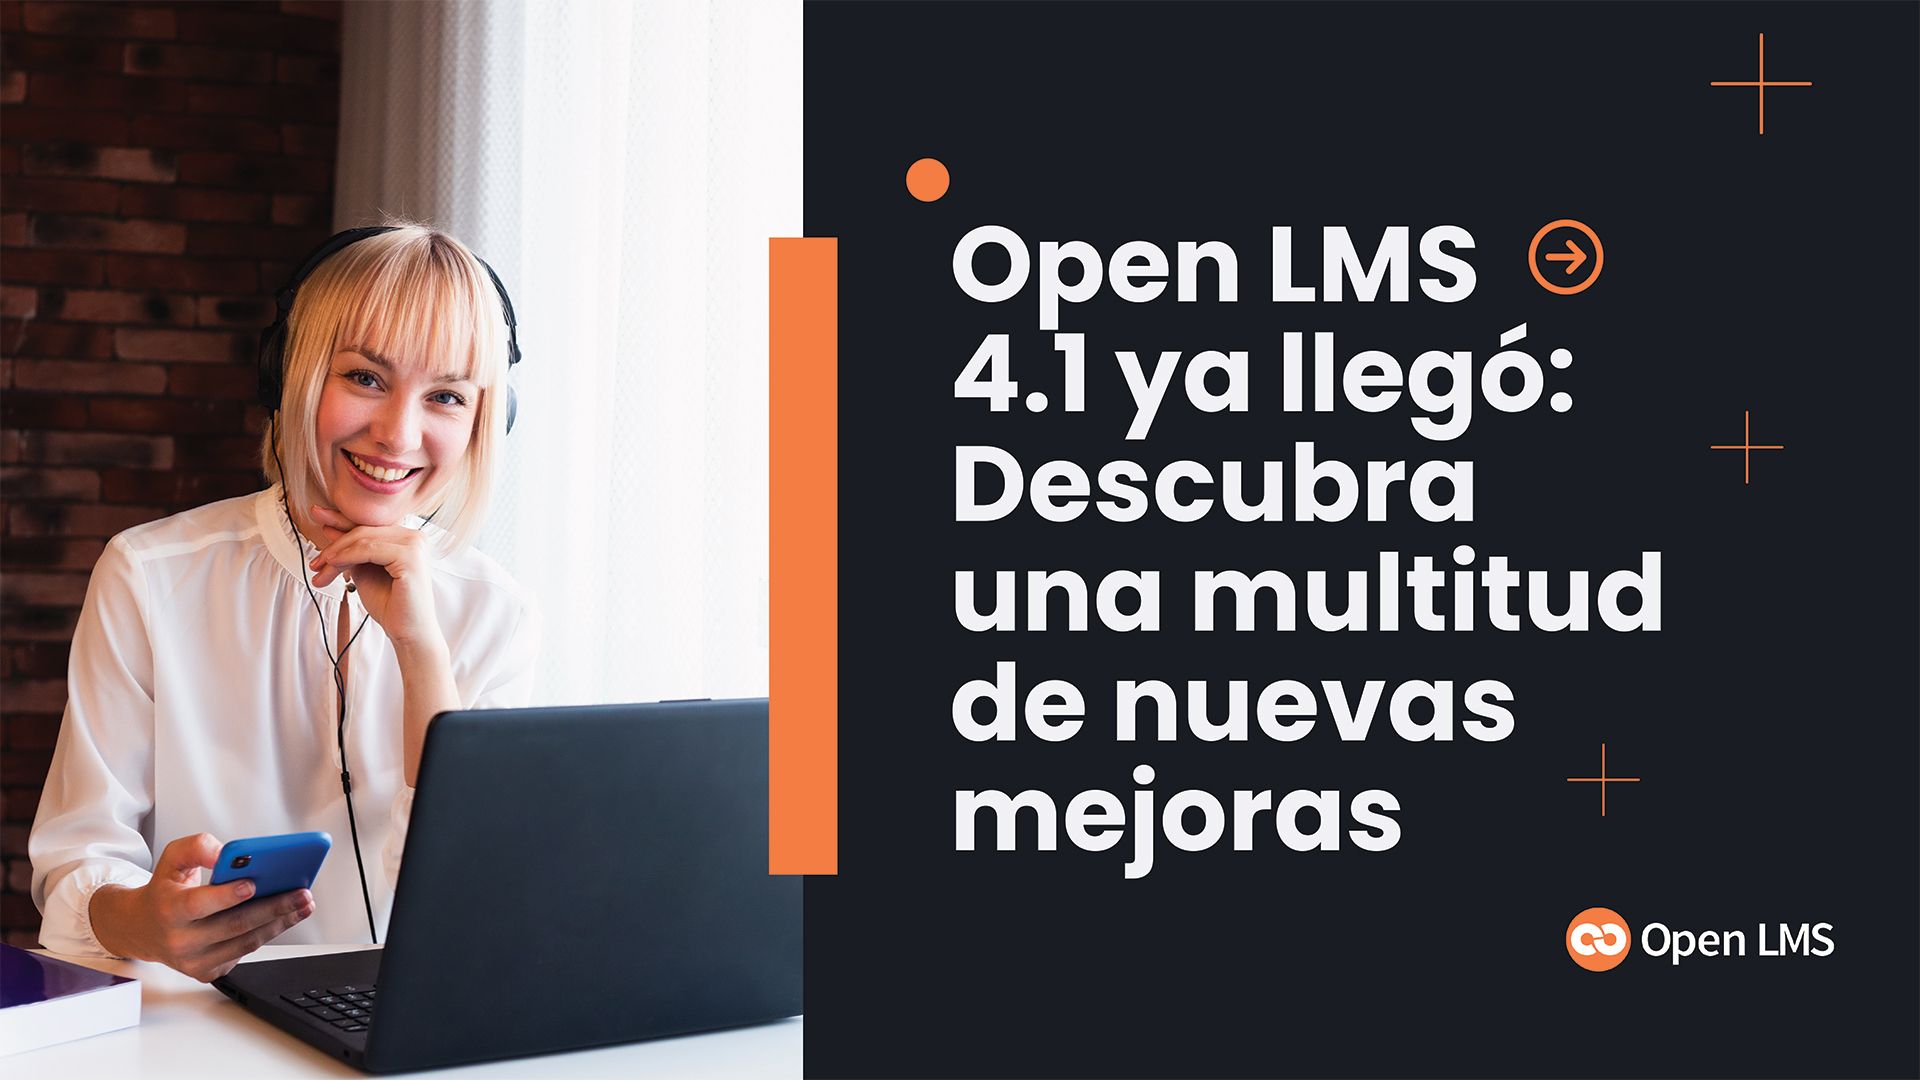 Open LMS 4.1 ya llegó: Descubra una multitud de nuevas mejoras